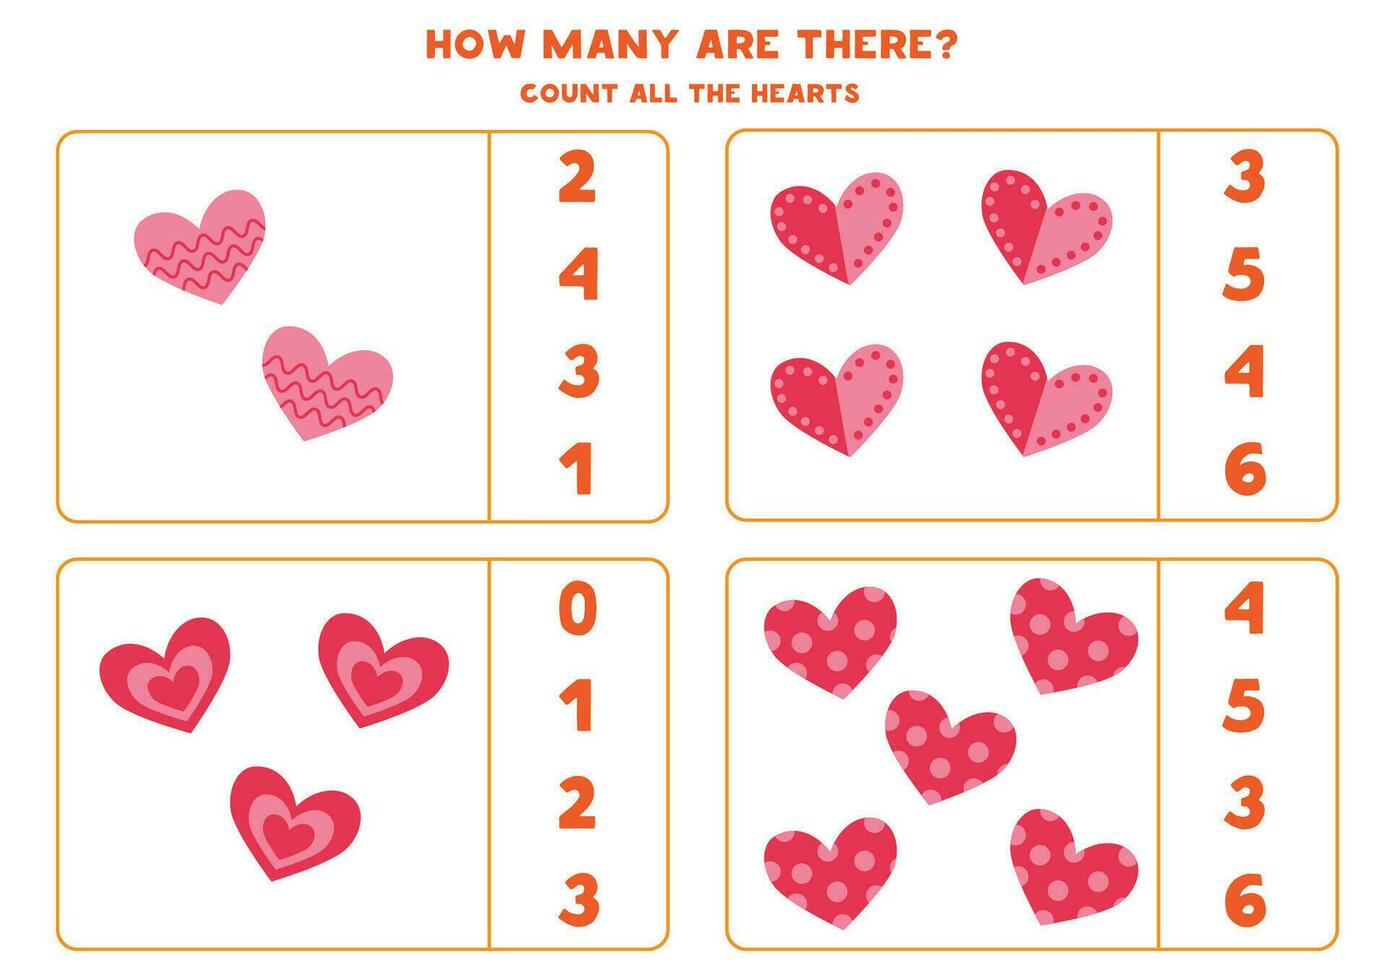 Anzahl alle Karikatur Herzen und Kreis das richtig Antworten. vektor